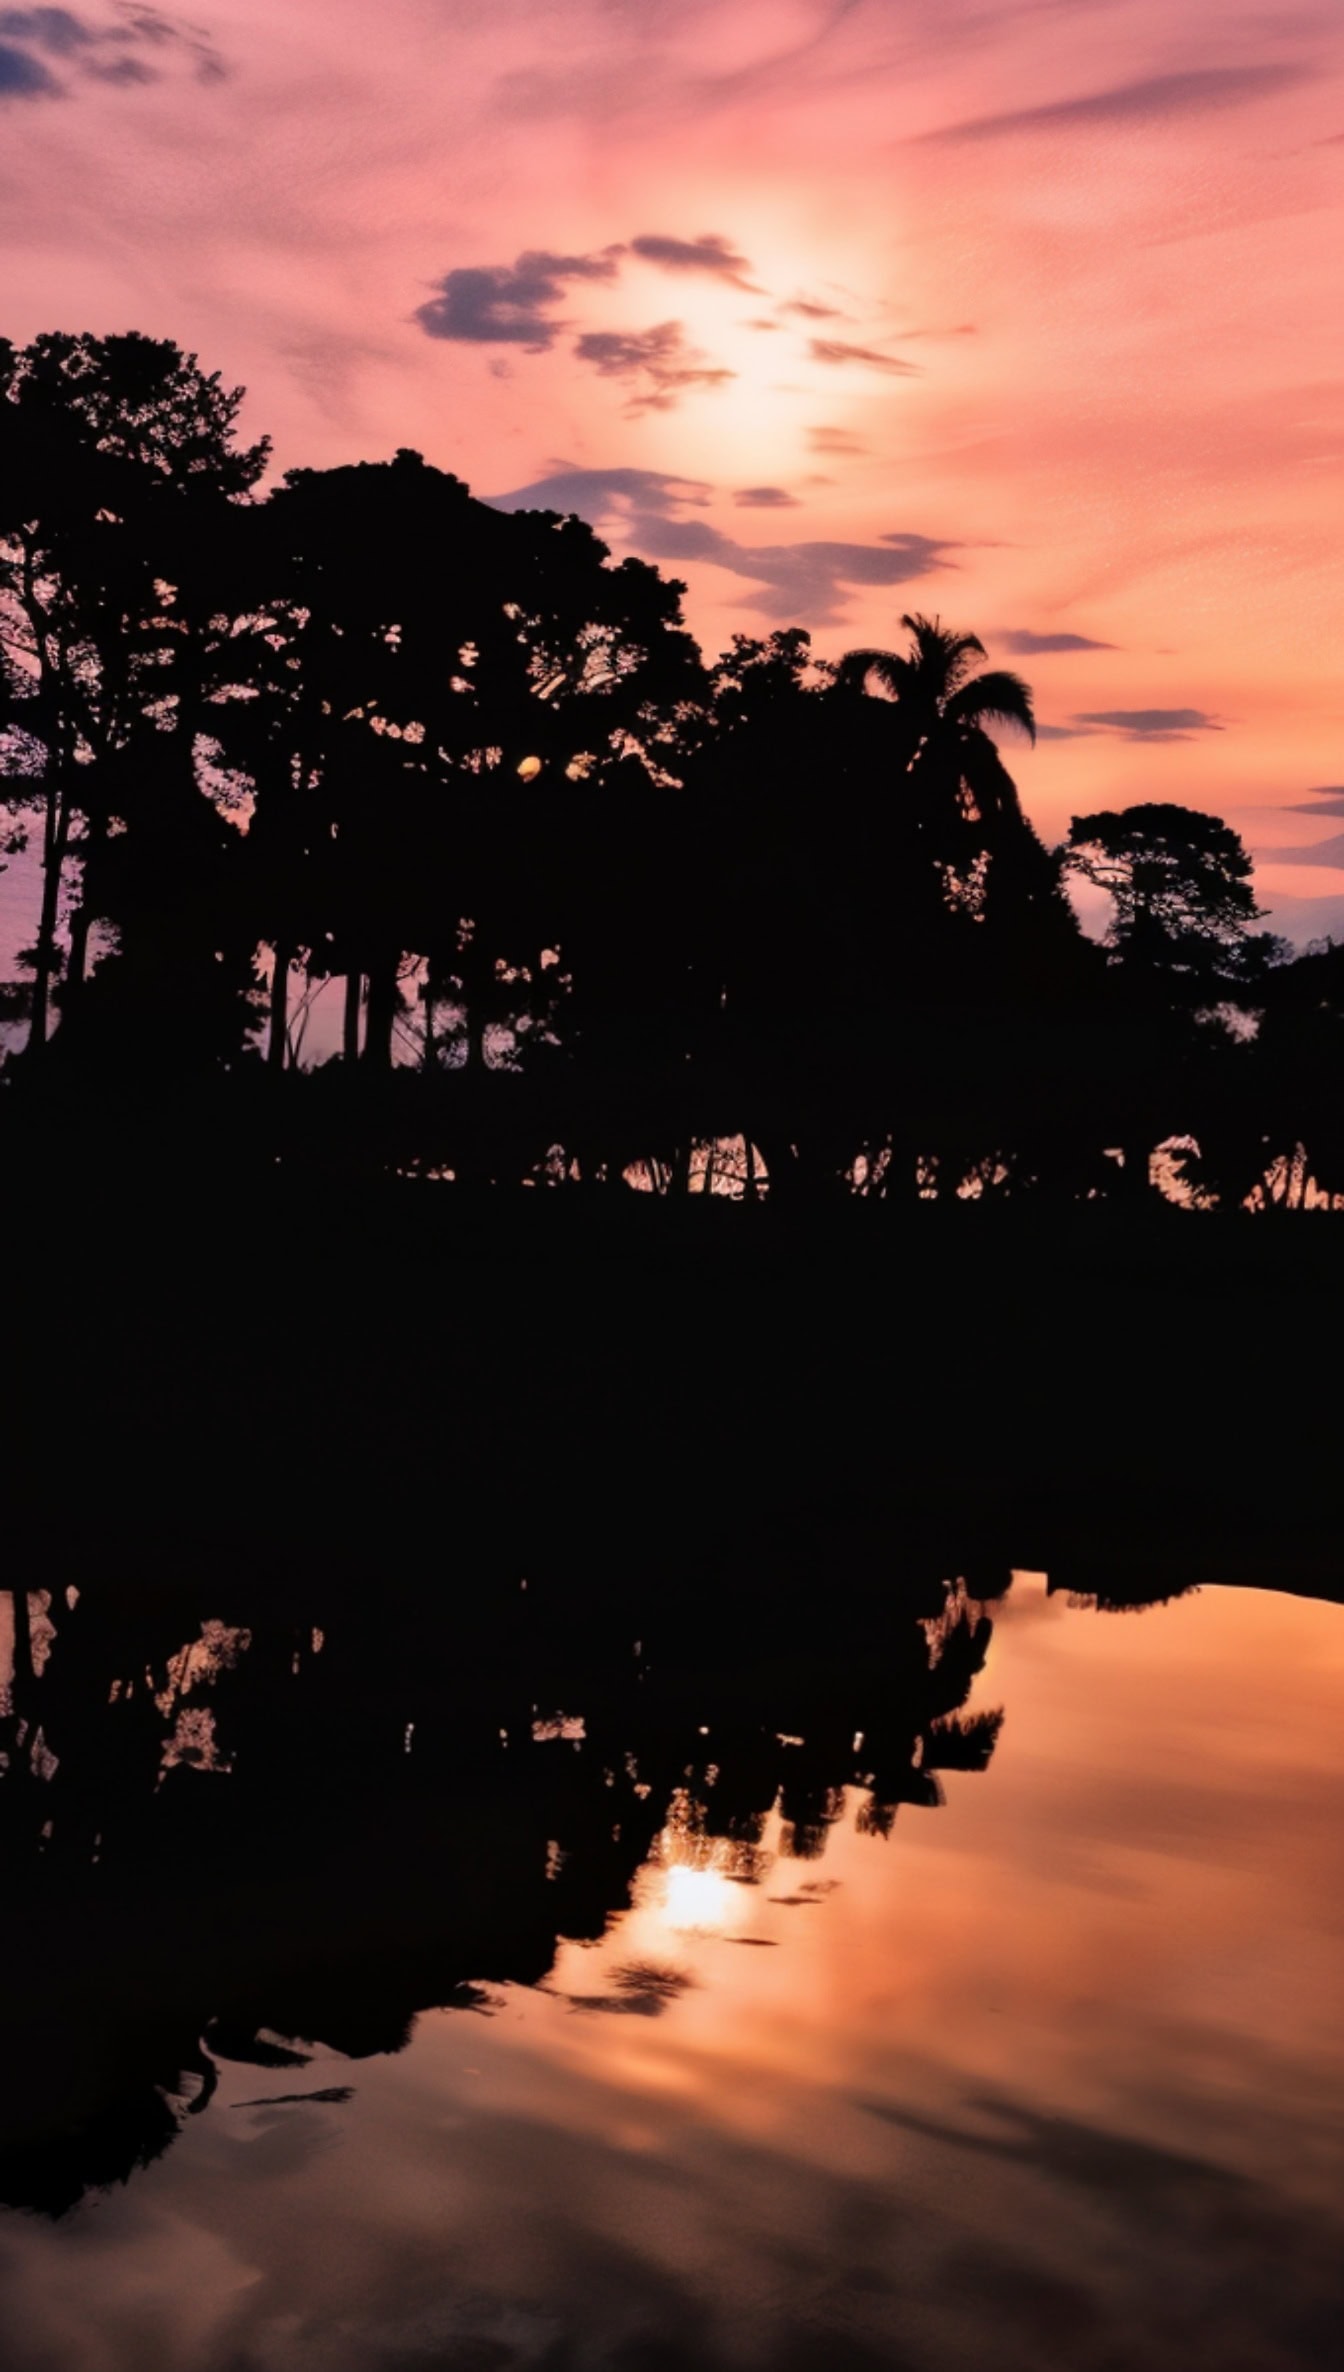 Mørk silhuet af træer reflekteret i et vand med orange-pink himmel med skyer ved solopgang